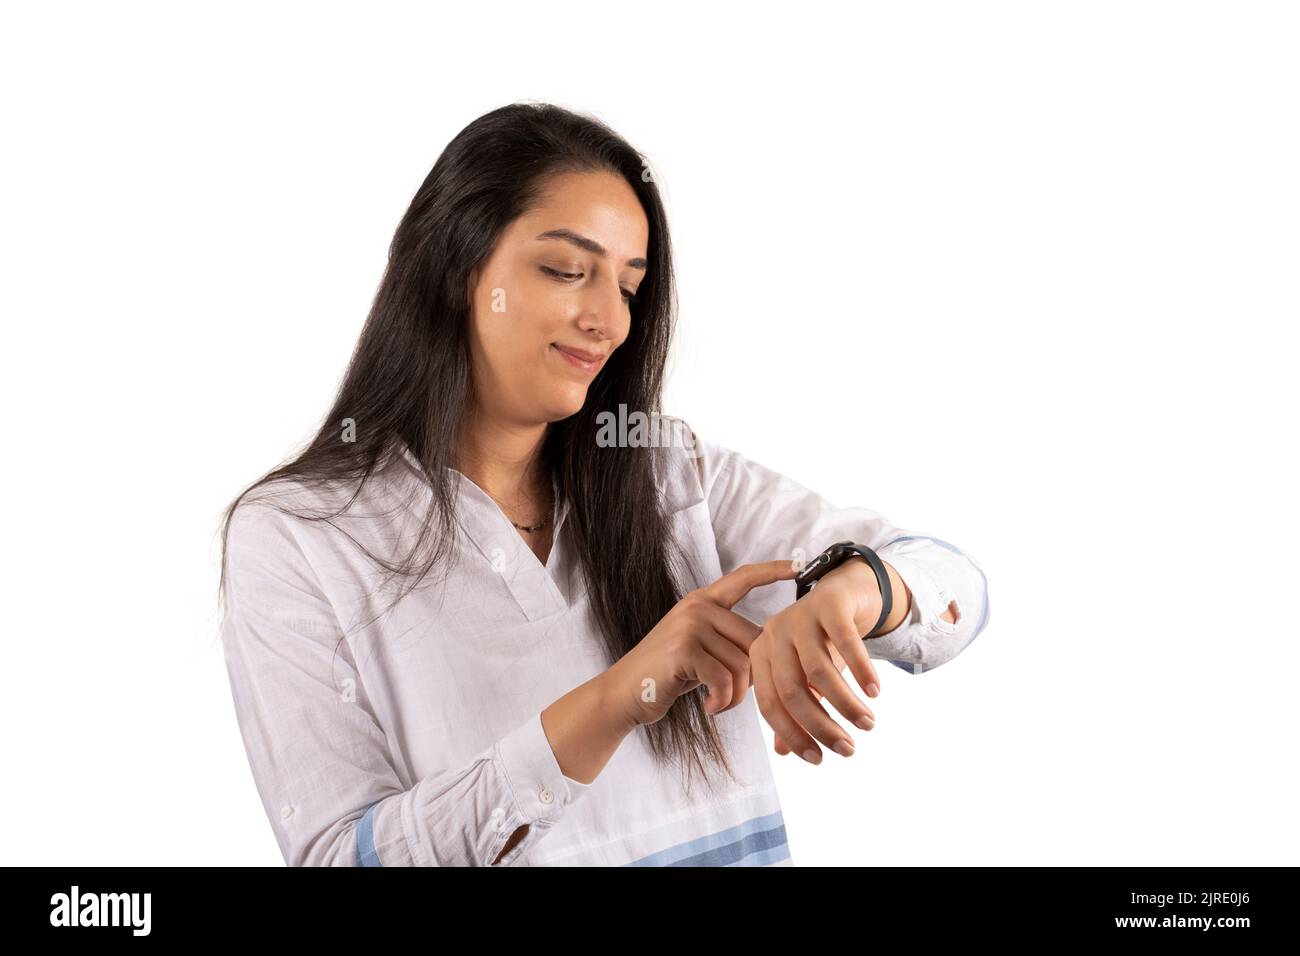 Berührende Smartwatch, Porträt einer kaukasischen Frau, die Smartwatch berührt. Stehen vor isoliertem weißem Hintergrund. Weiblich mit moderner Technik. Stockfoto